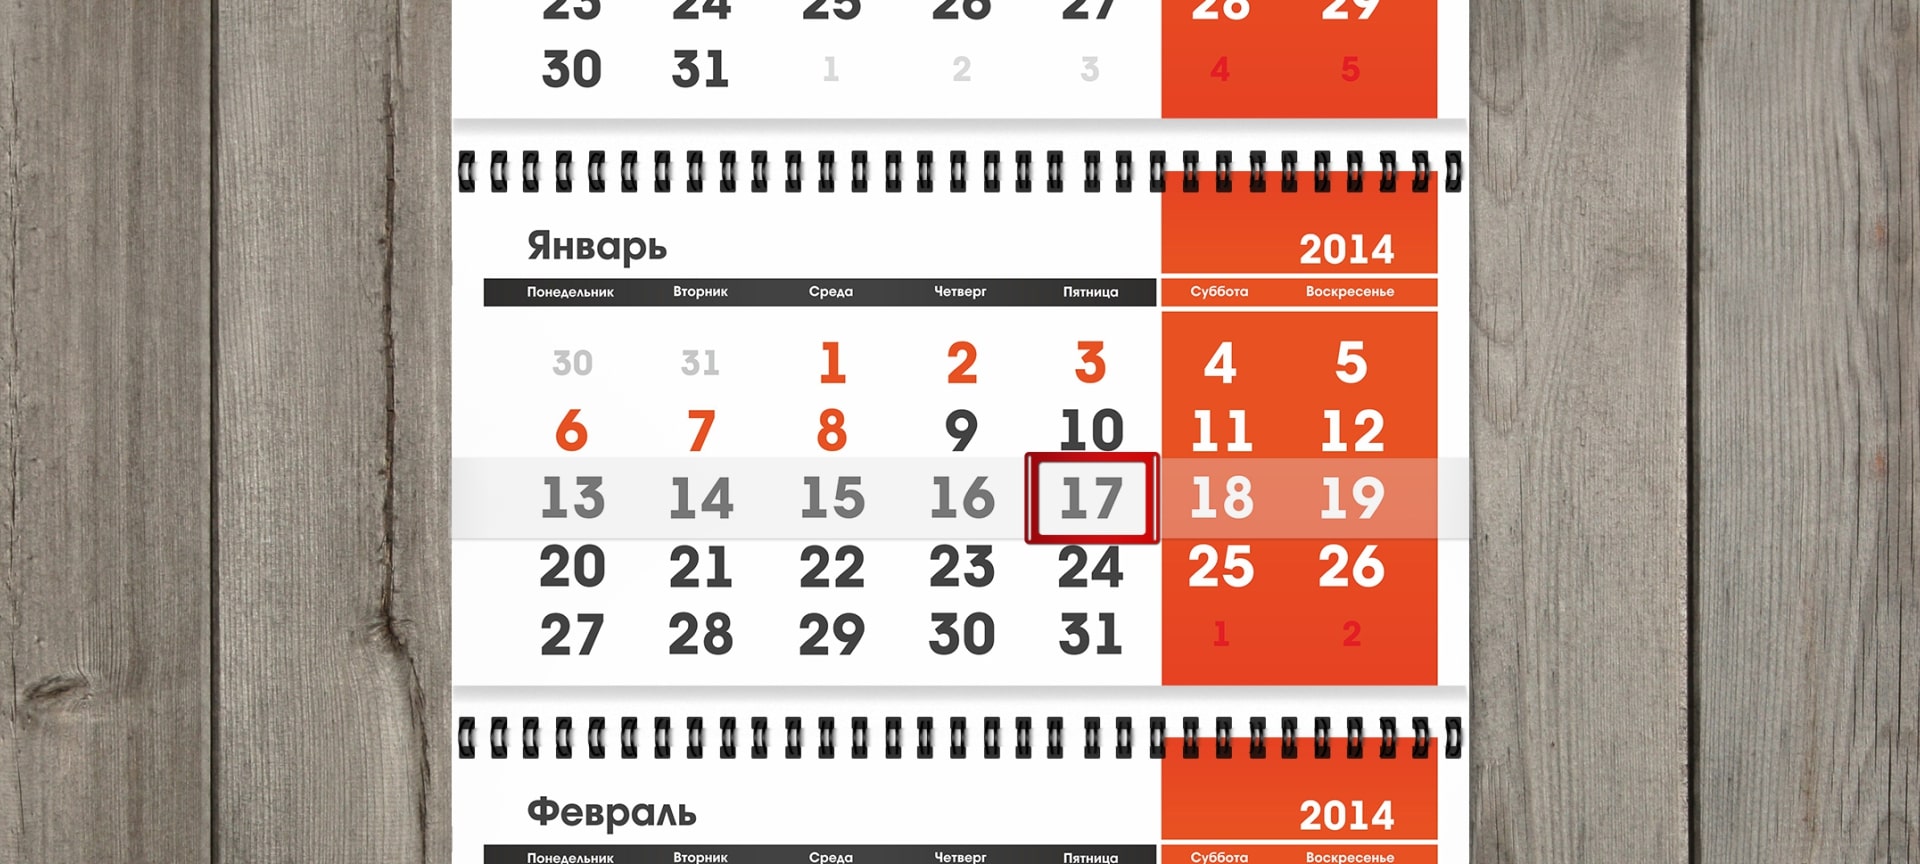 calendars_esn_3-min.jpg